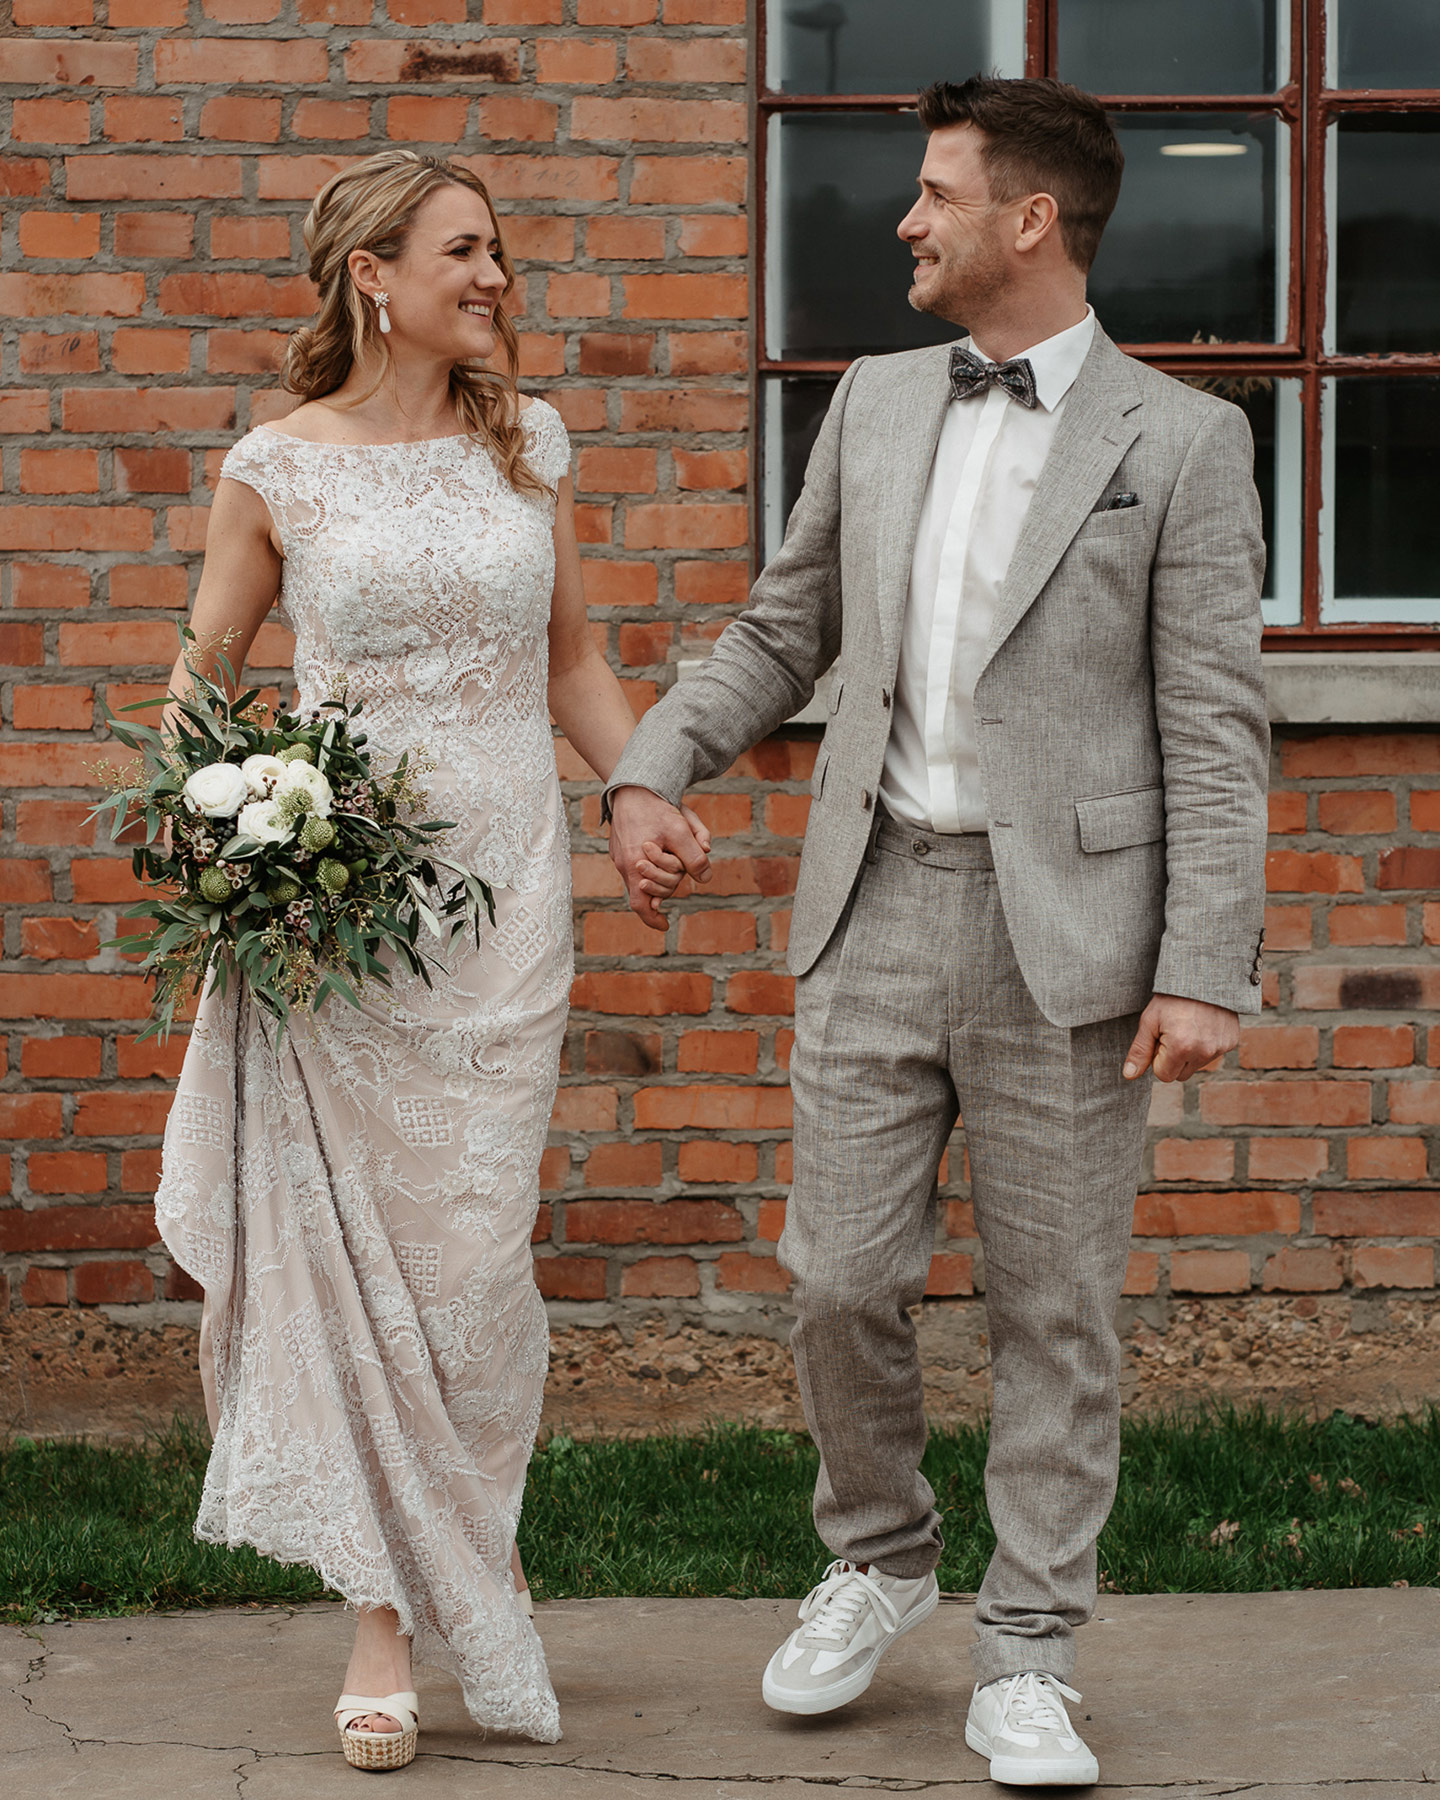 Die Braut in einem creme weißen Hochzeitskleid aus Spitze und der Bräutigam gekleidet in einem grauen Anzug schauen sich verliebt an.